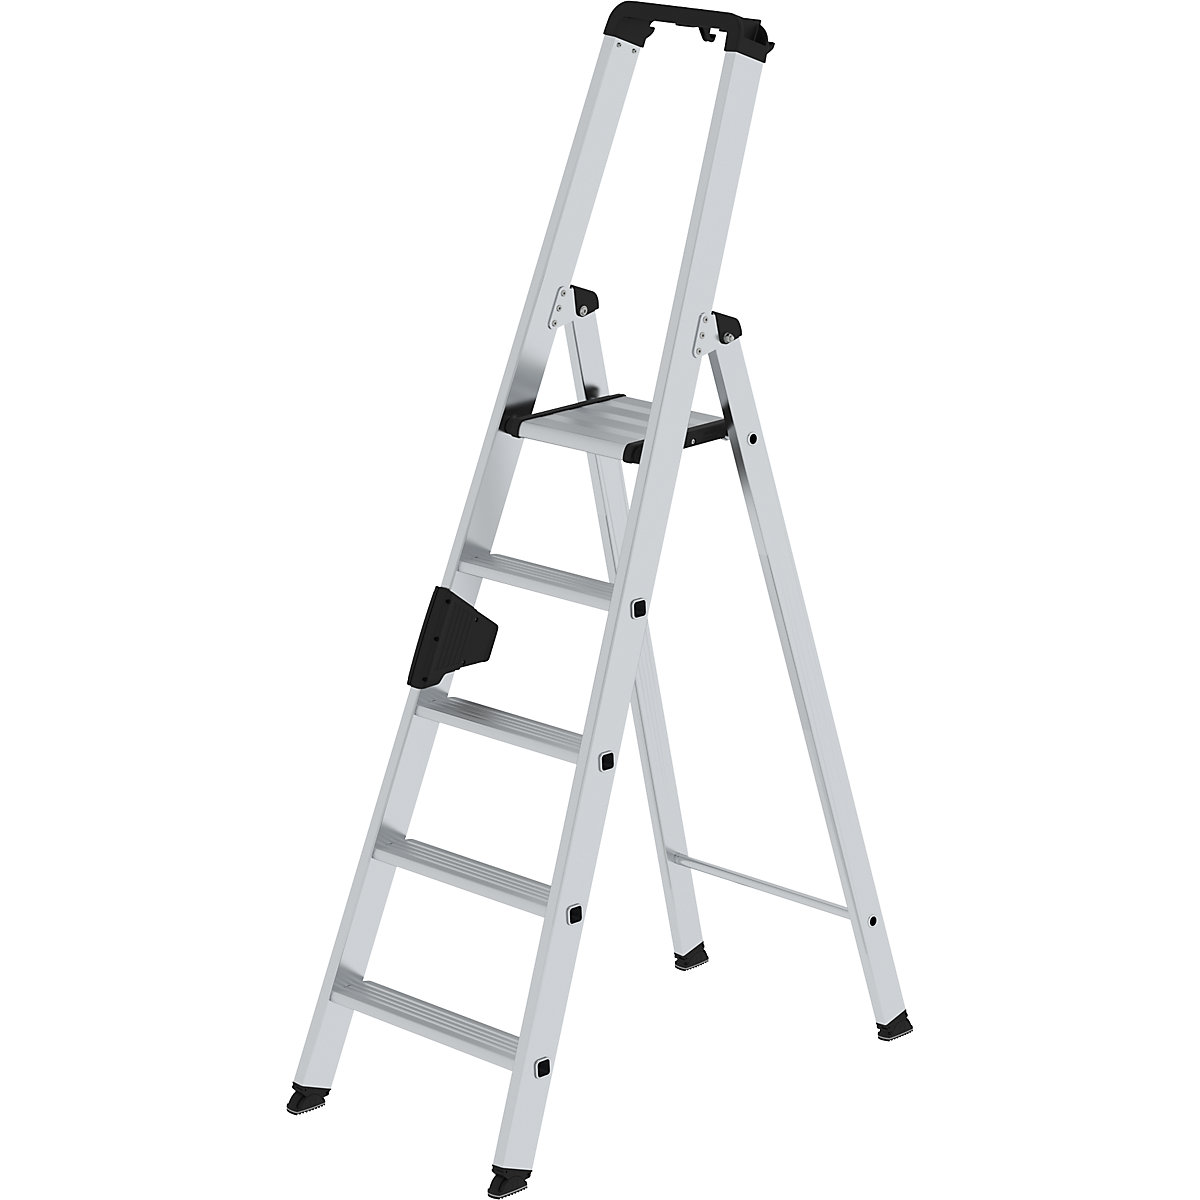 MUNK Stufen-Stehleiter, einseitig, Komfort-Ausführung mit ergo-pad®, 5 Stufen